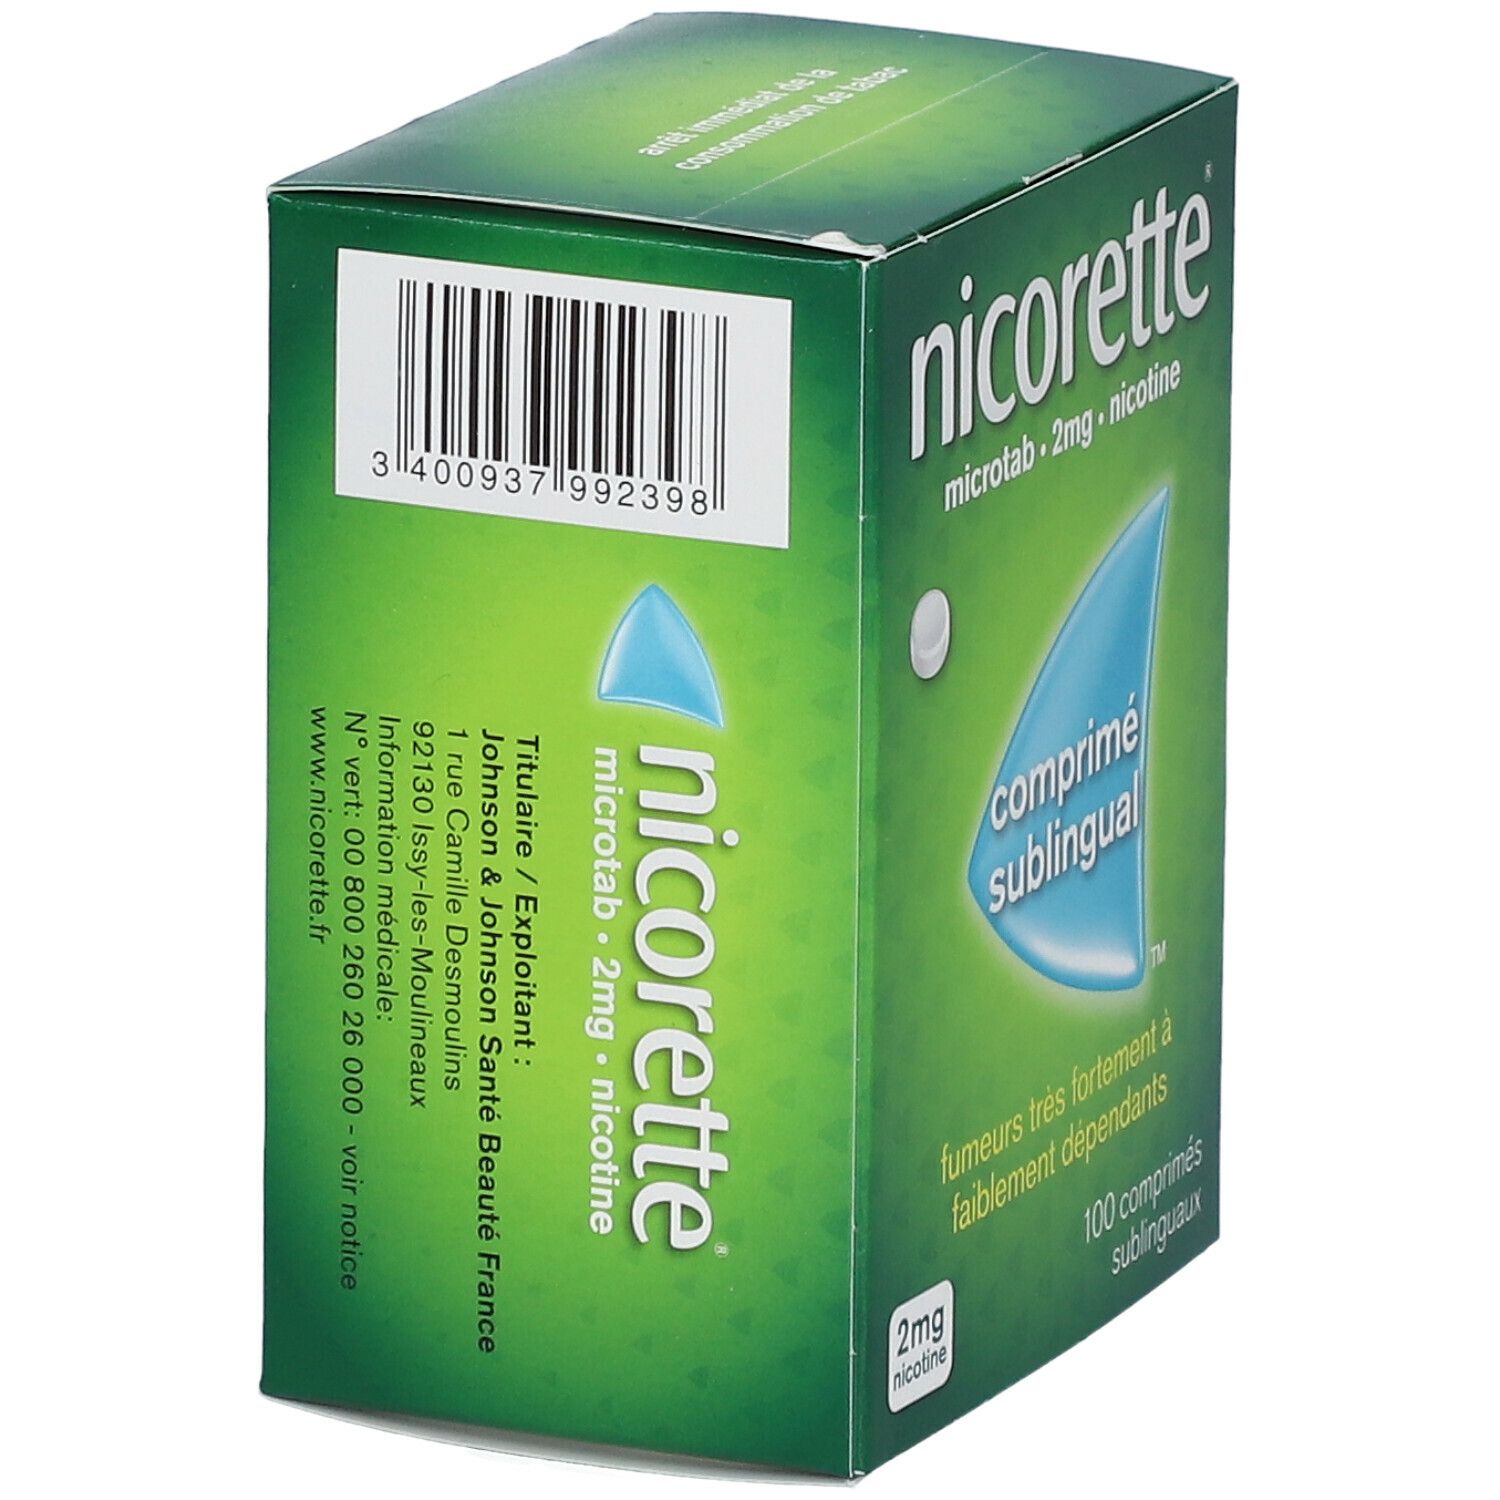 Nicorette® microtab 2 mg